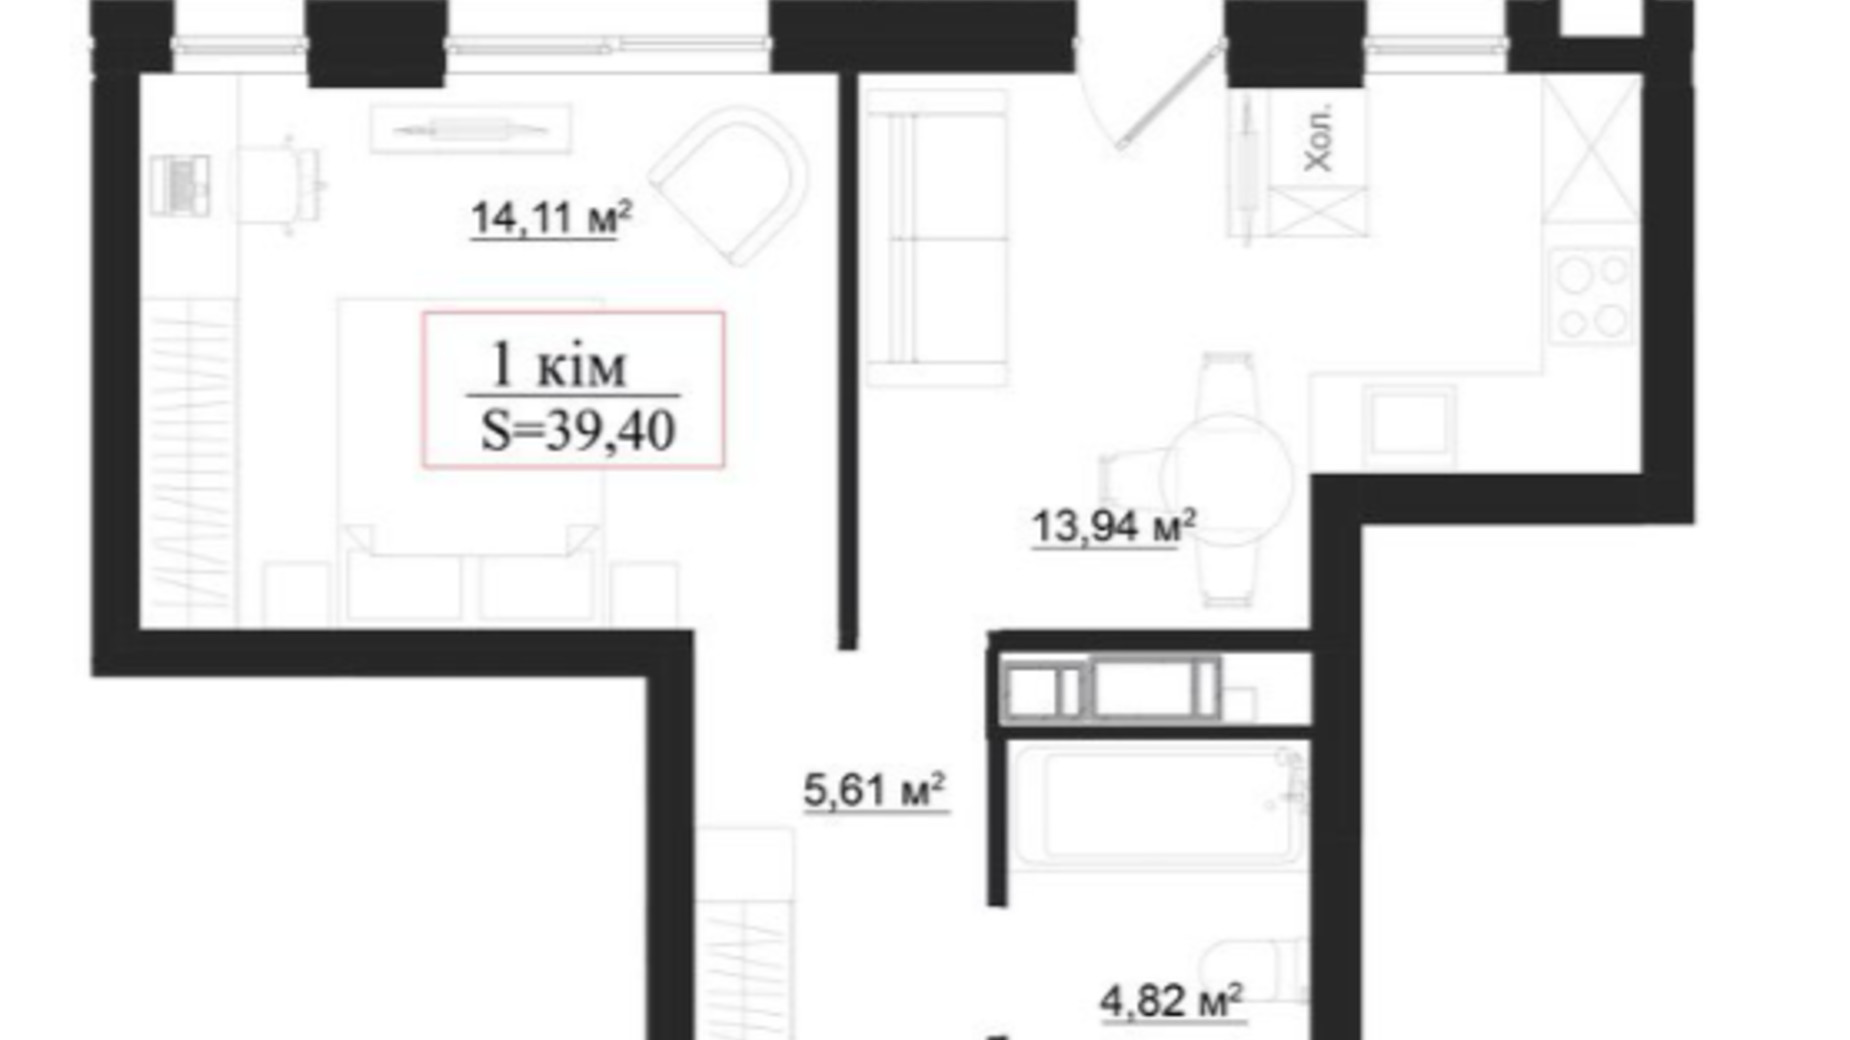 Планування 1-кімнатної квартири в Клубний будинок на Панаса Мирного 39.4 м², фото 659910